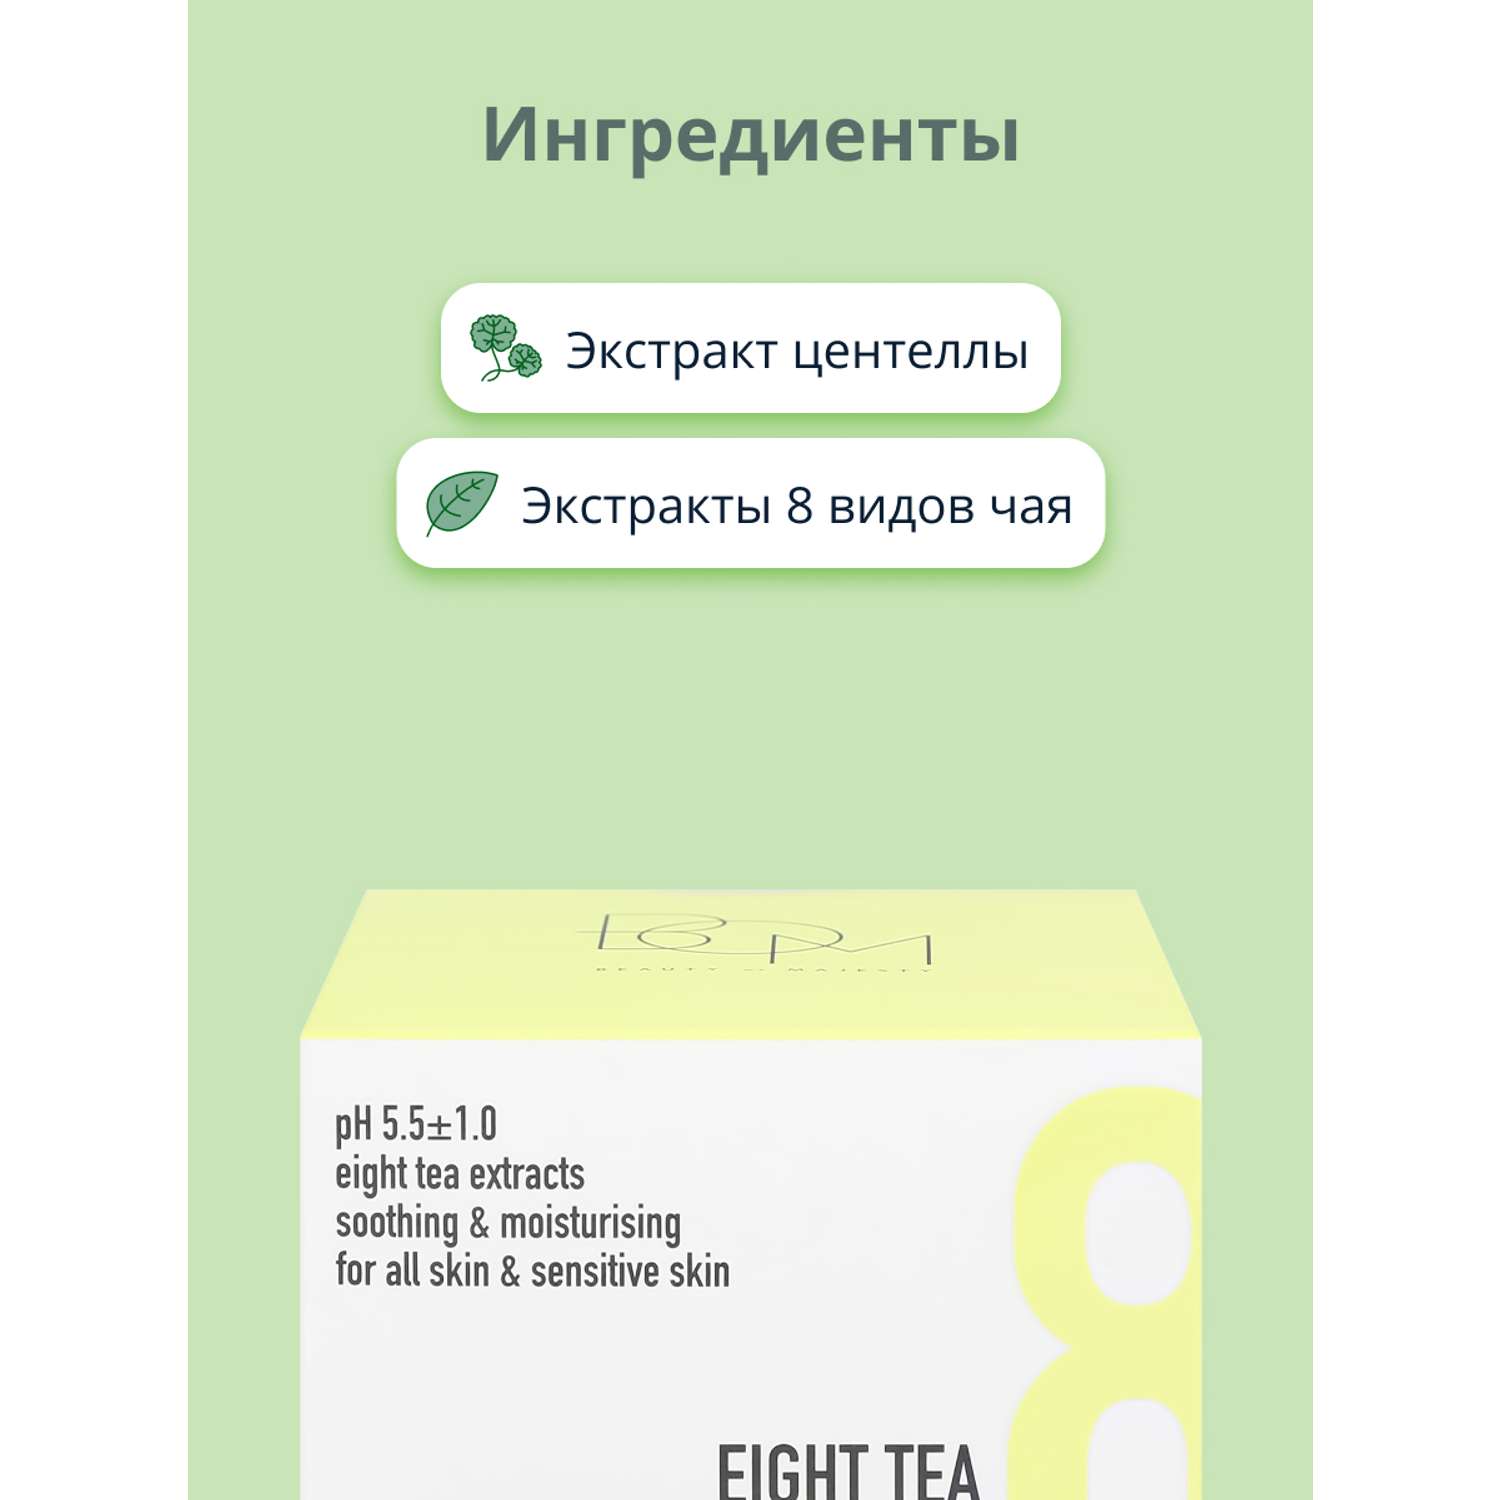 Крем для лица BOM Eight tea c экстрактами 8 видов чая успокаивающий и увлажняющий 50 г - фото 2